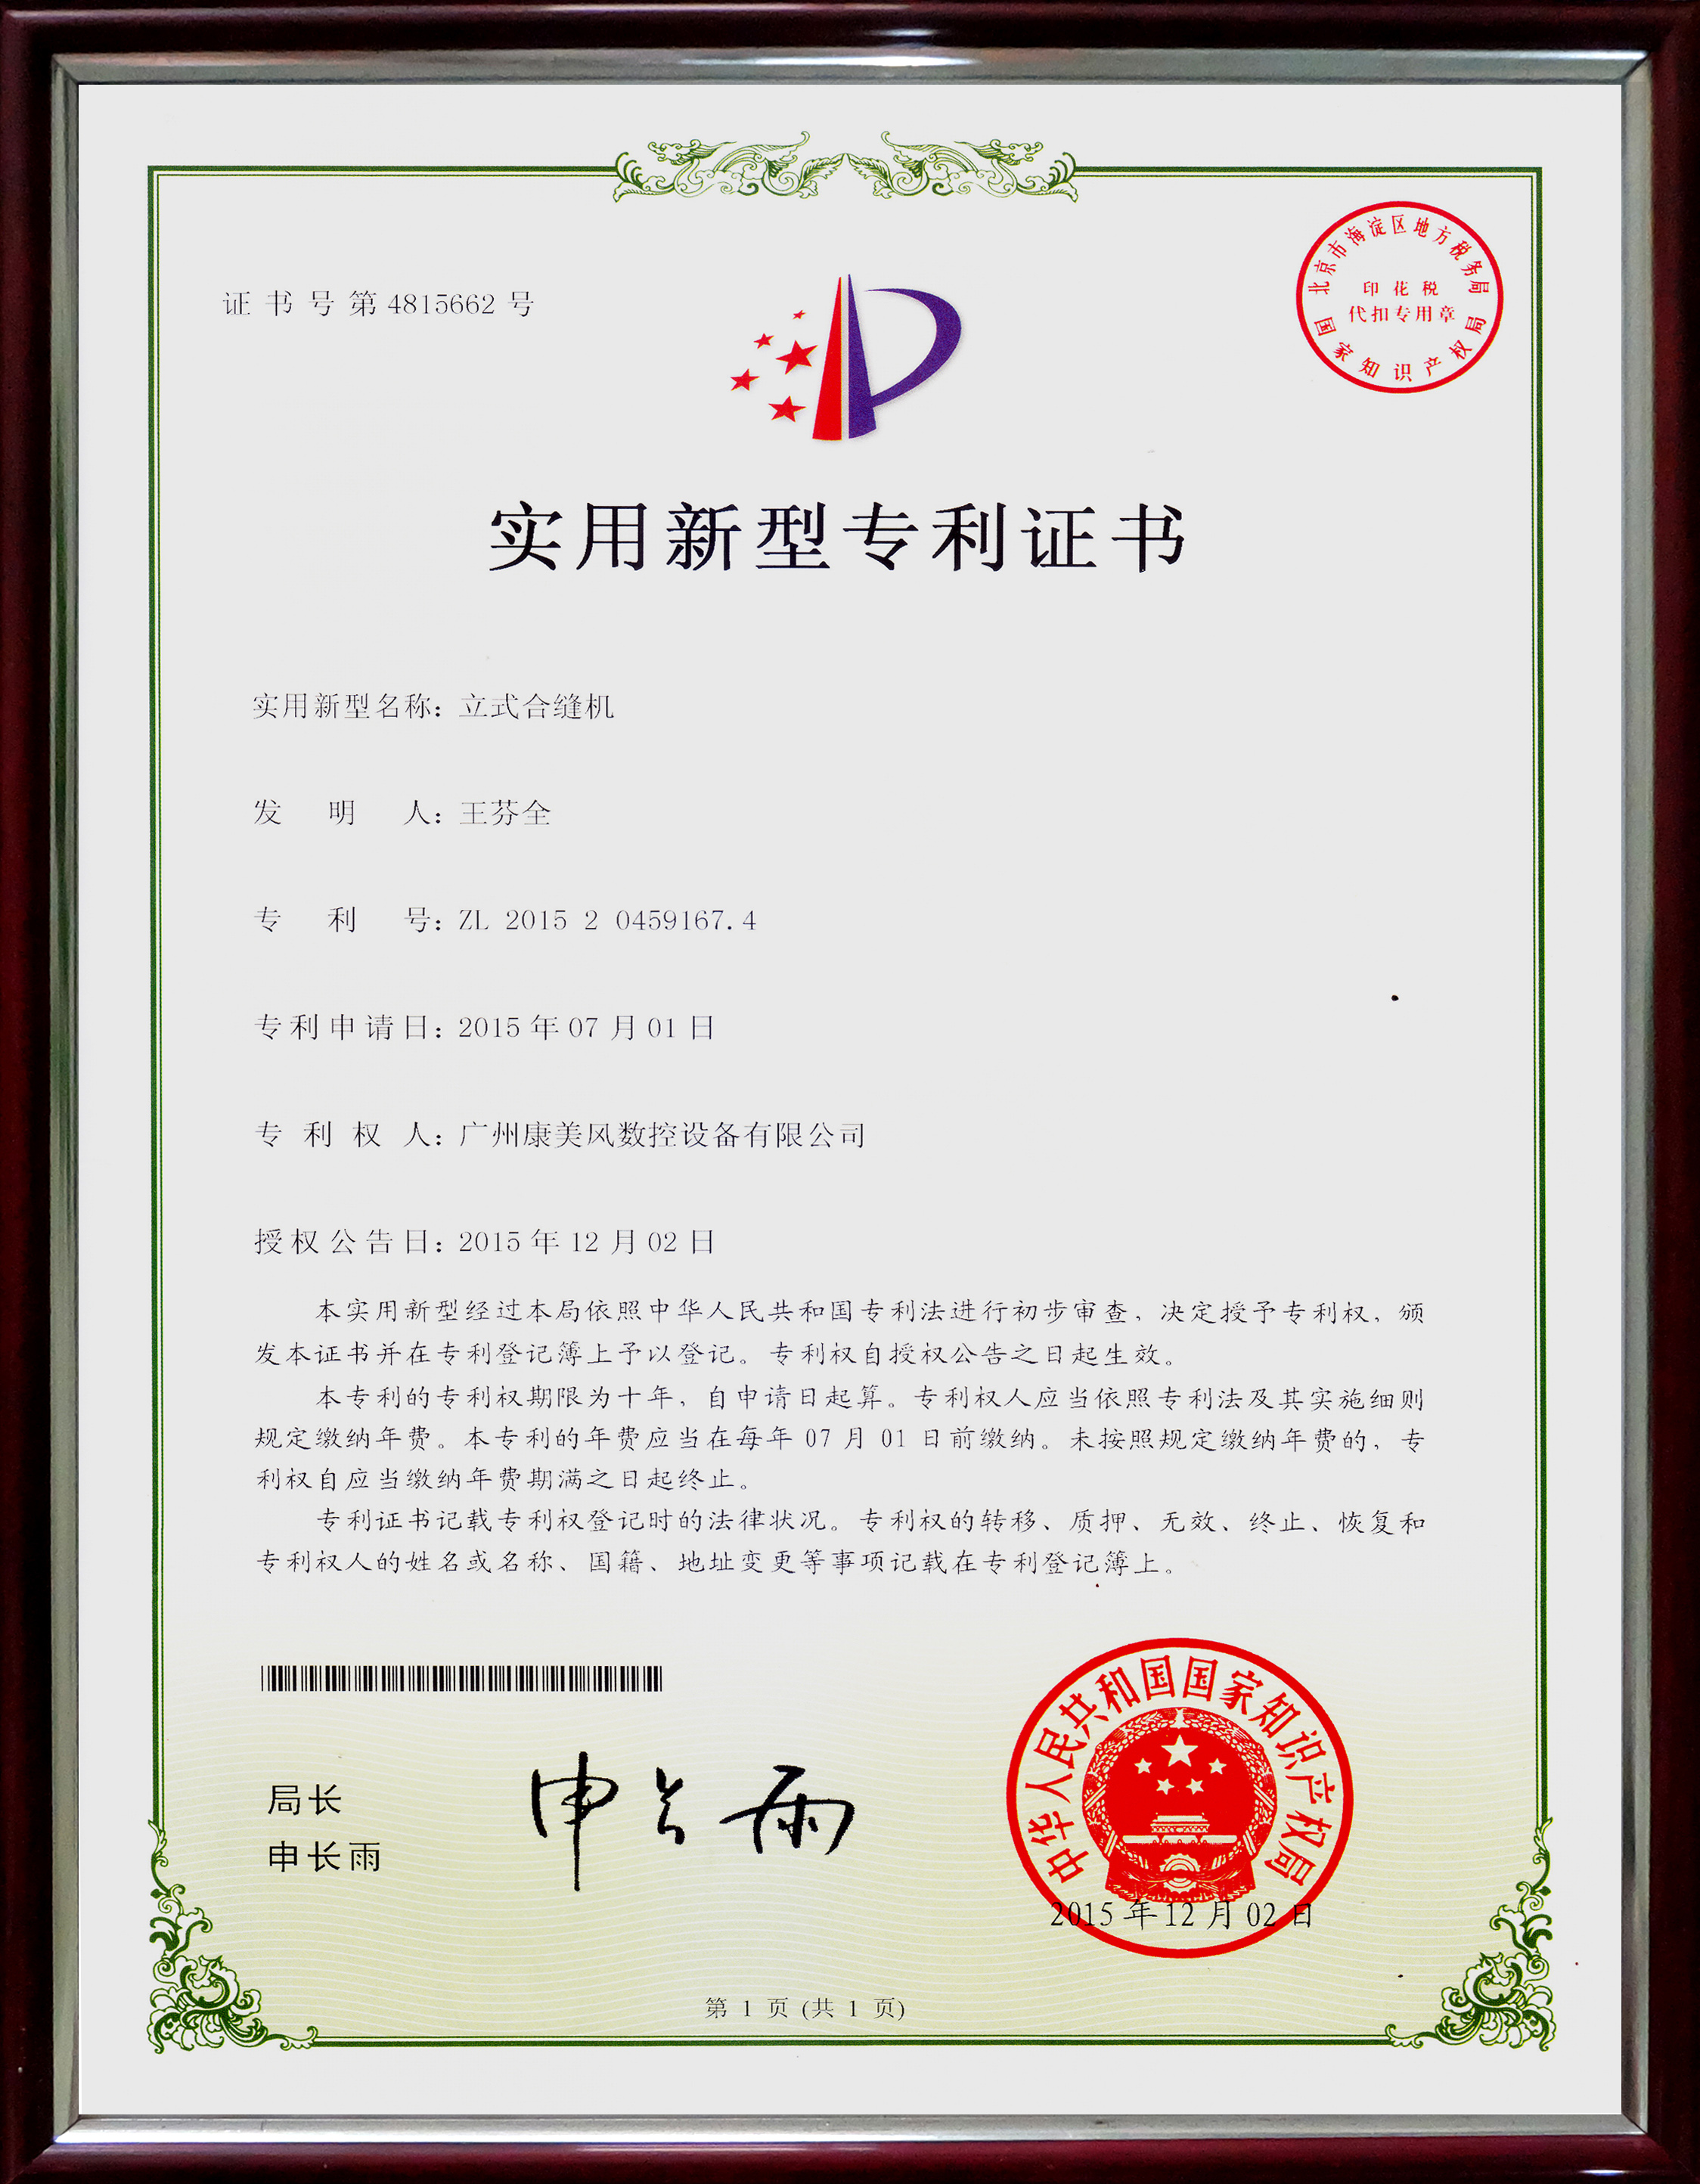 Vertical duct seam closing machine patent certificate